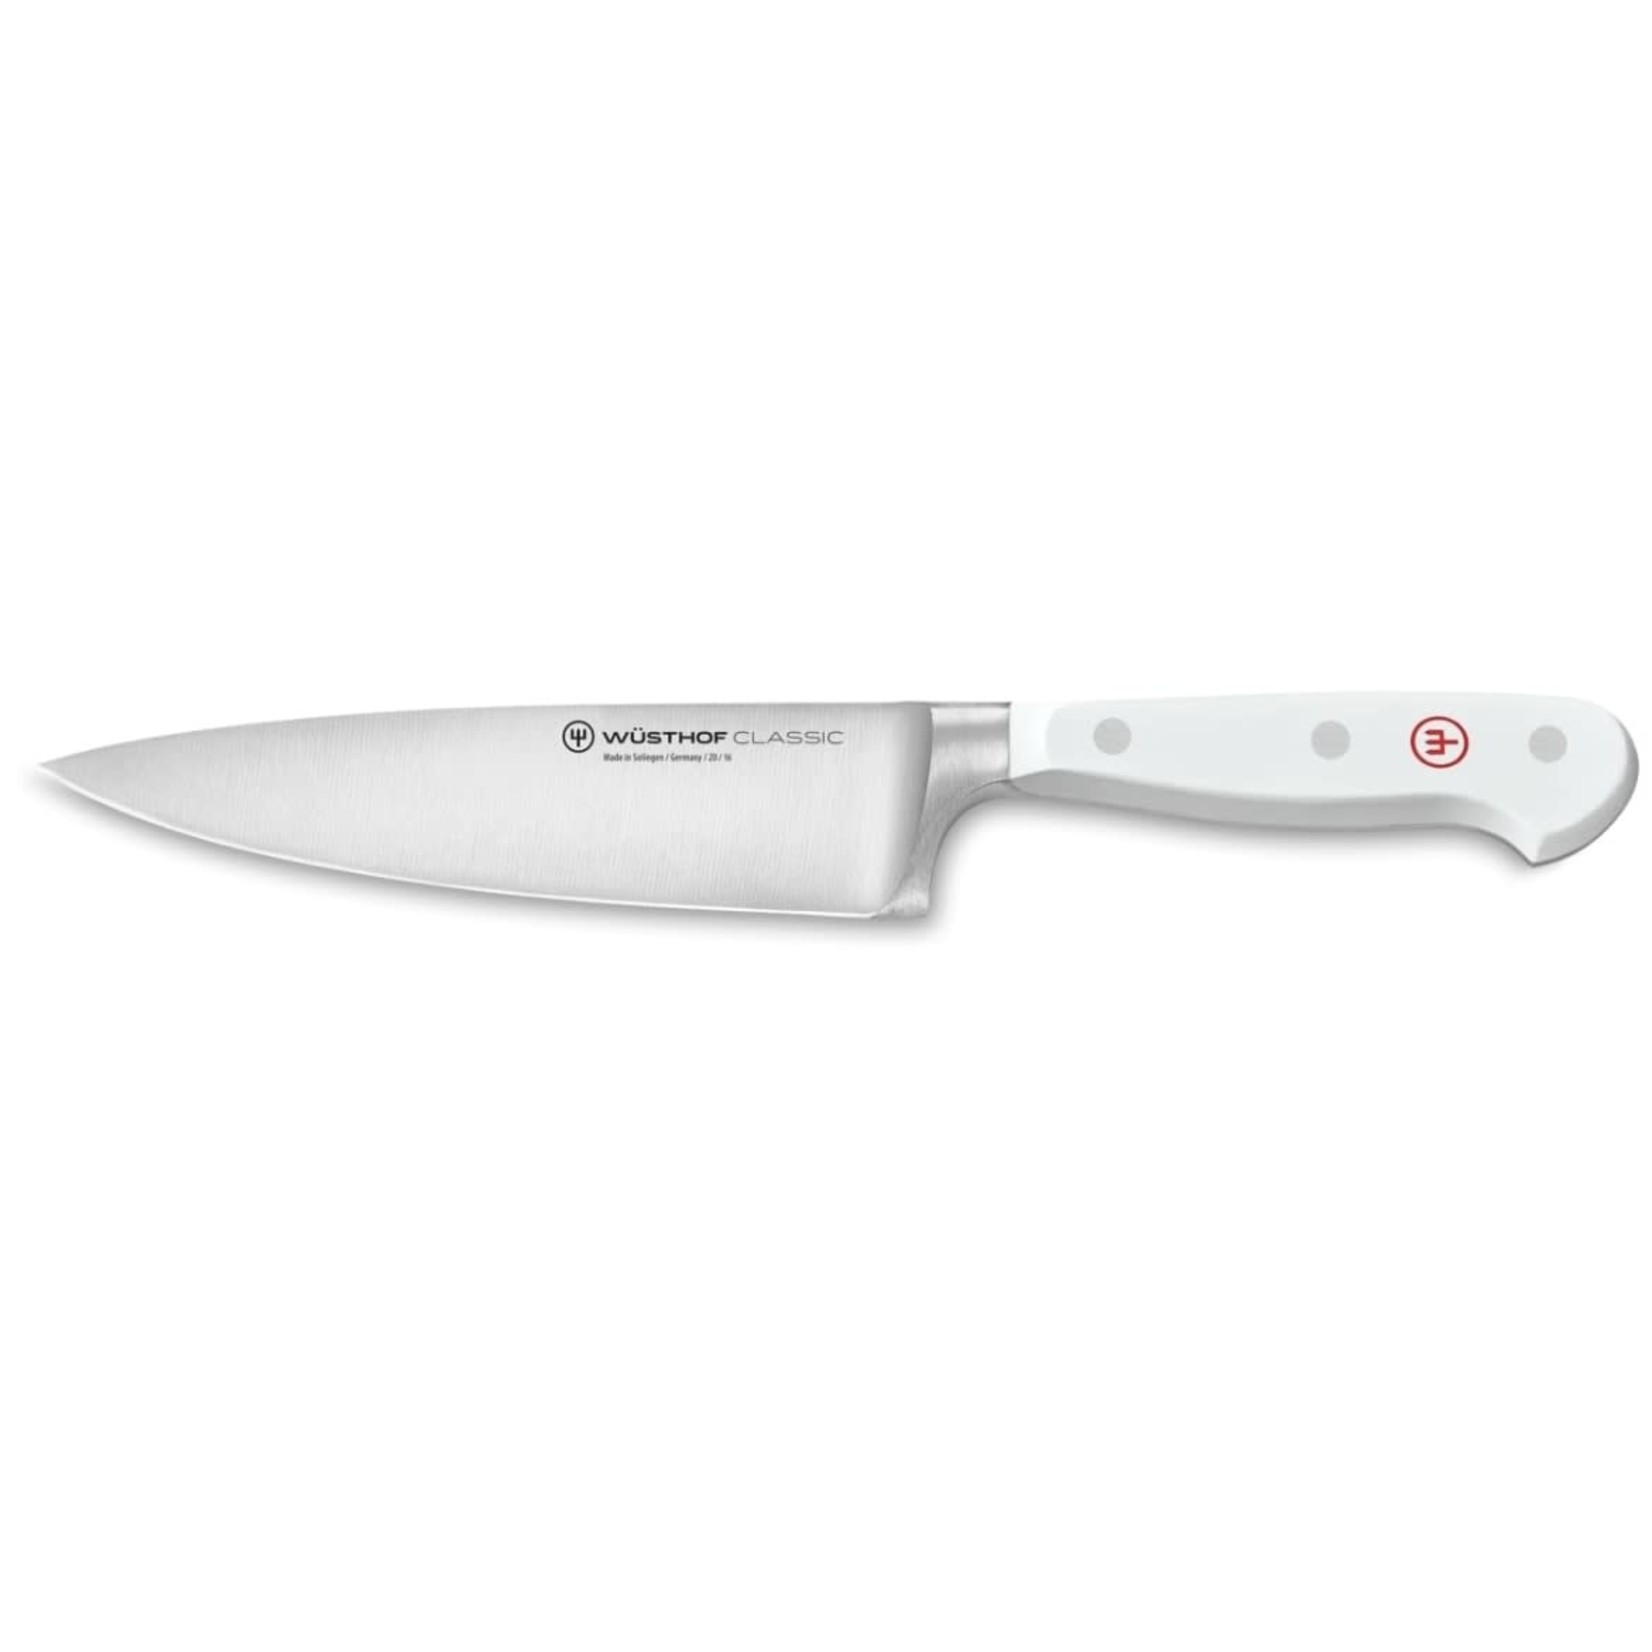 WUSTHOF WUSTHOF Classic Chef's Knife 6" - White